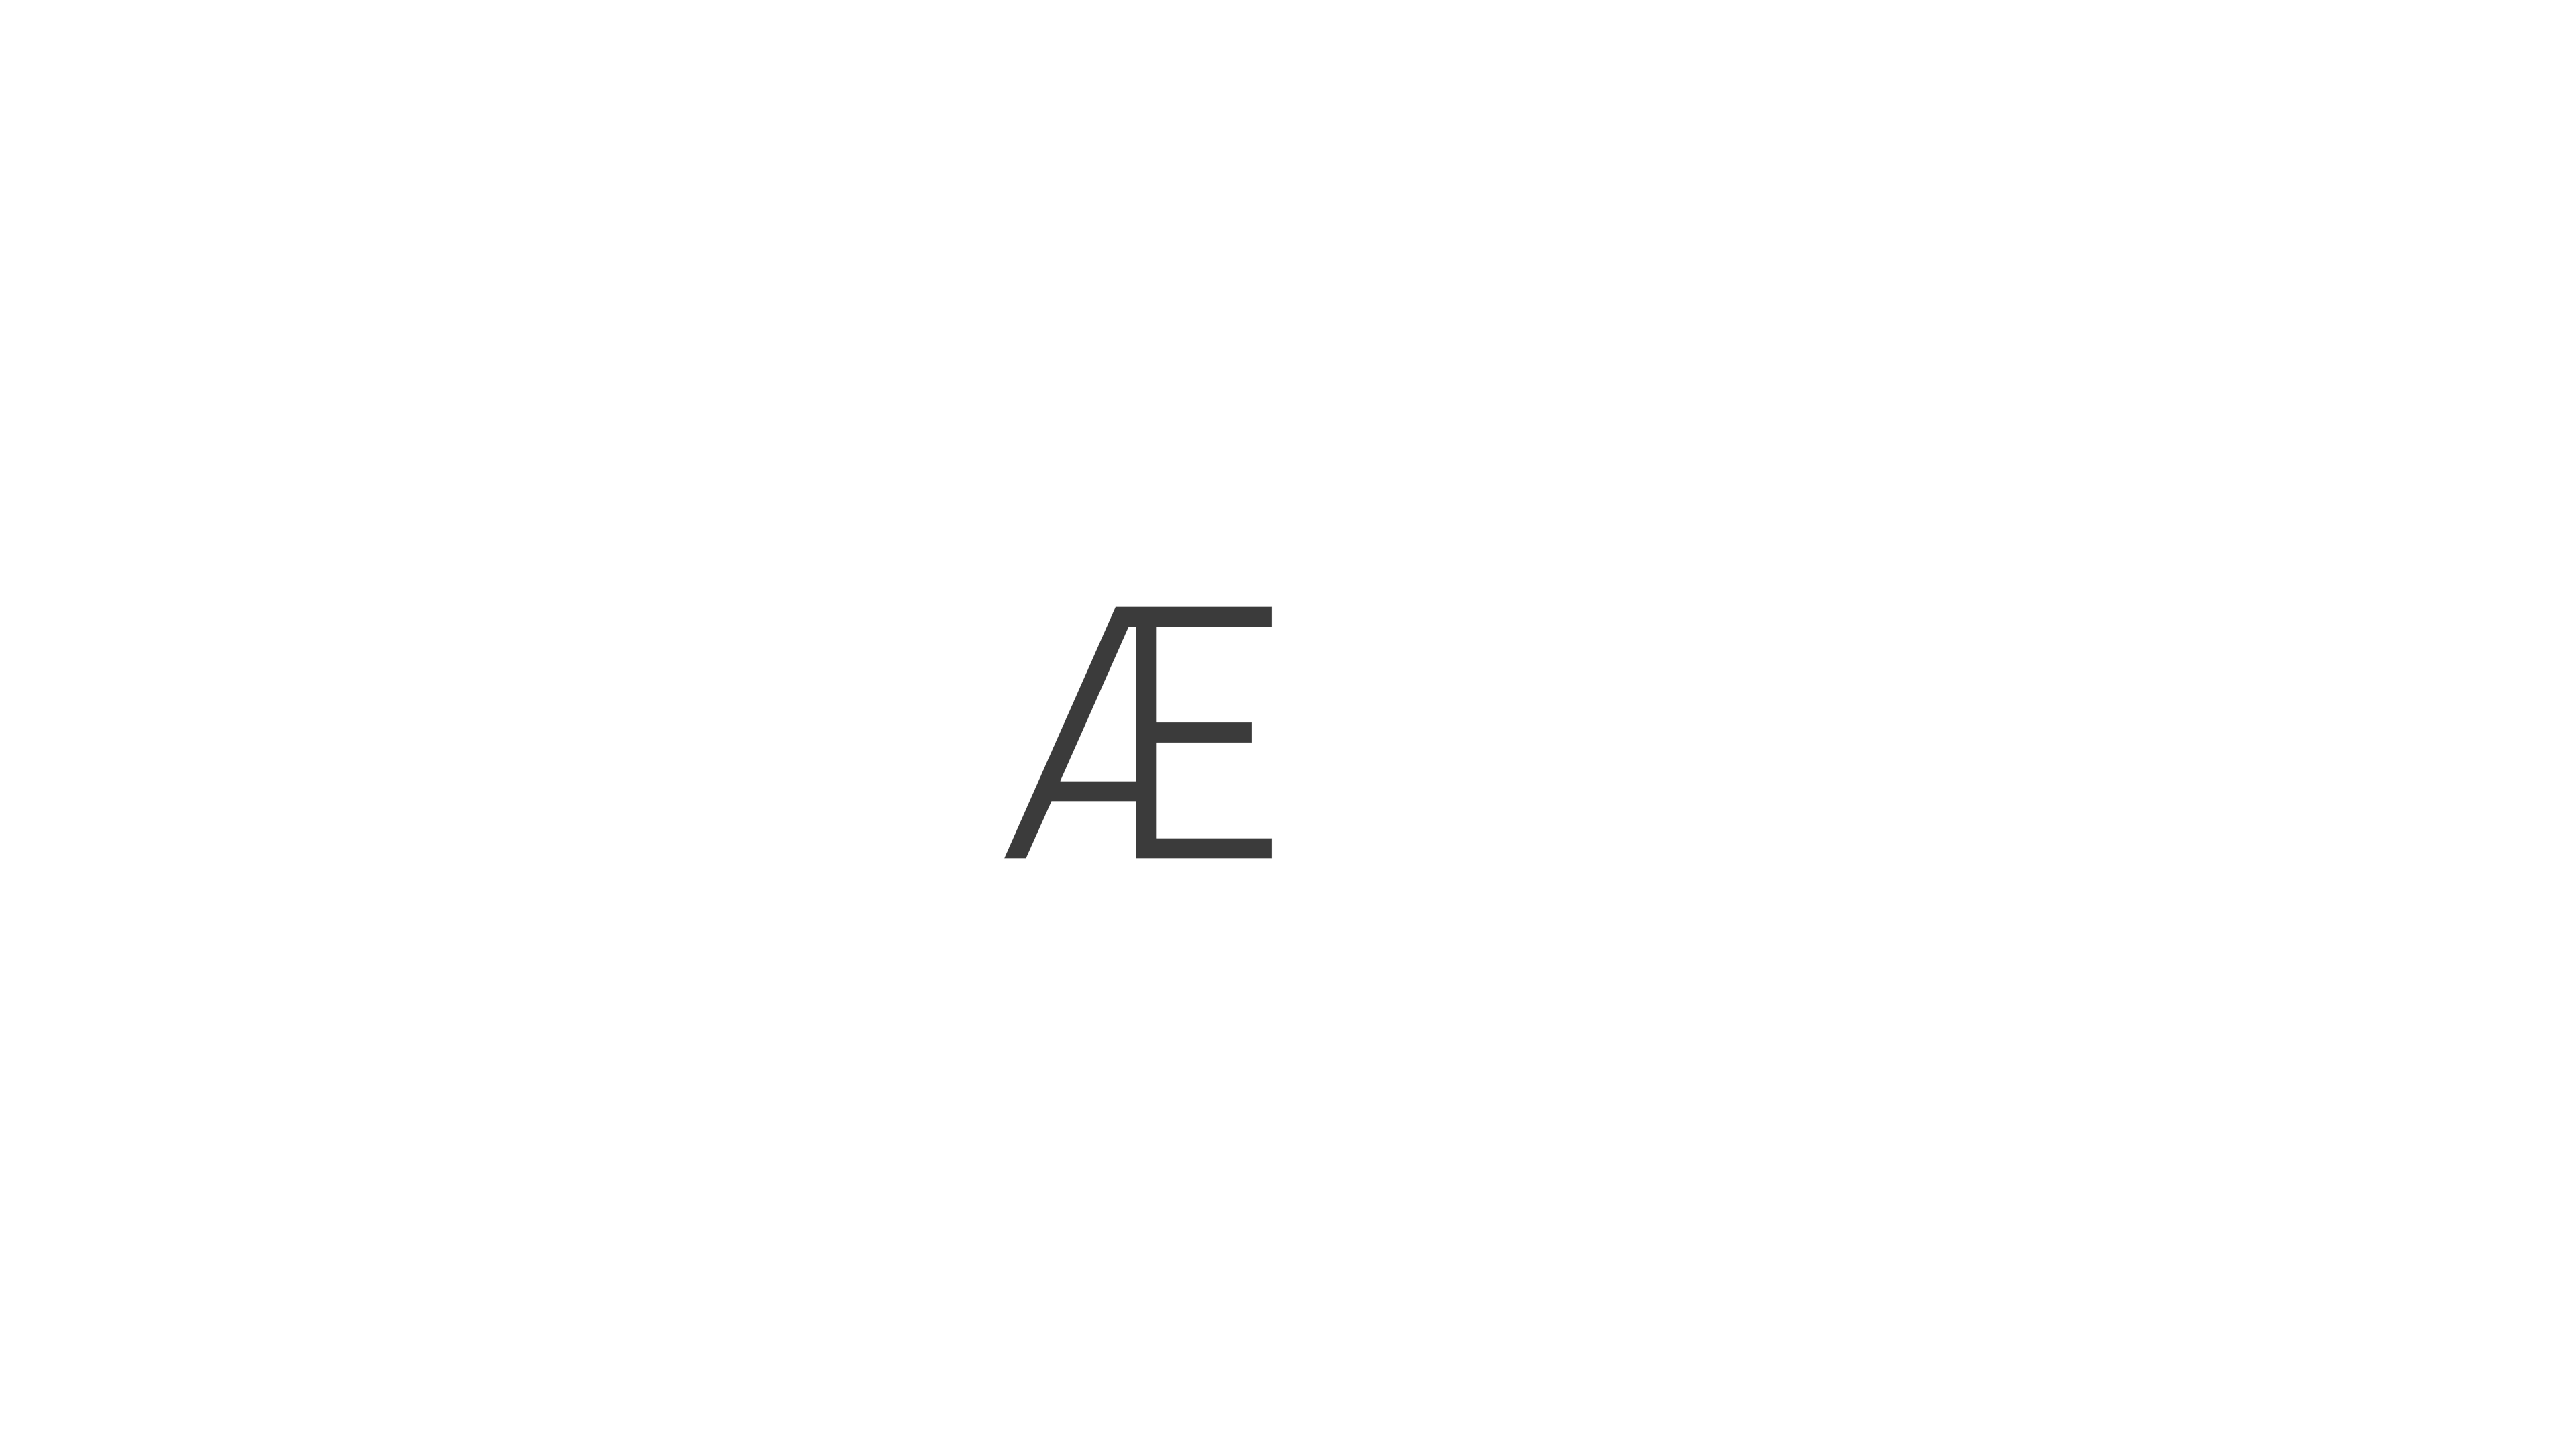 AltaeraAI